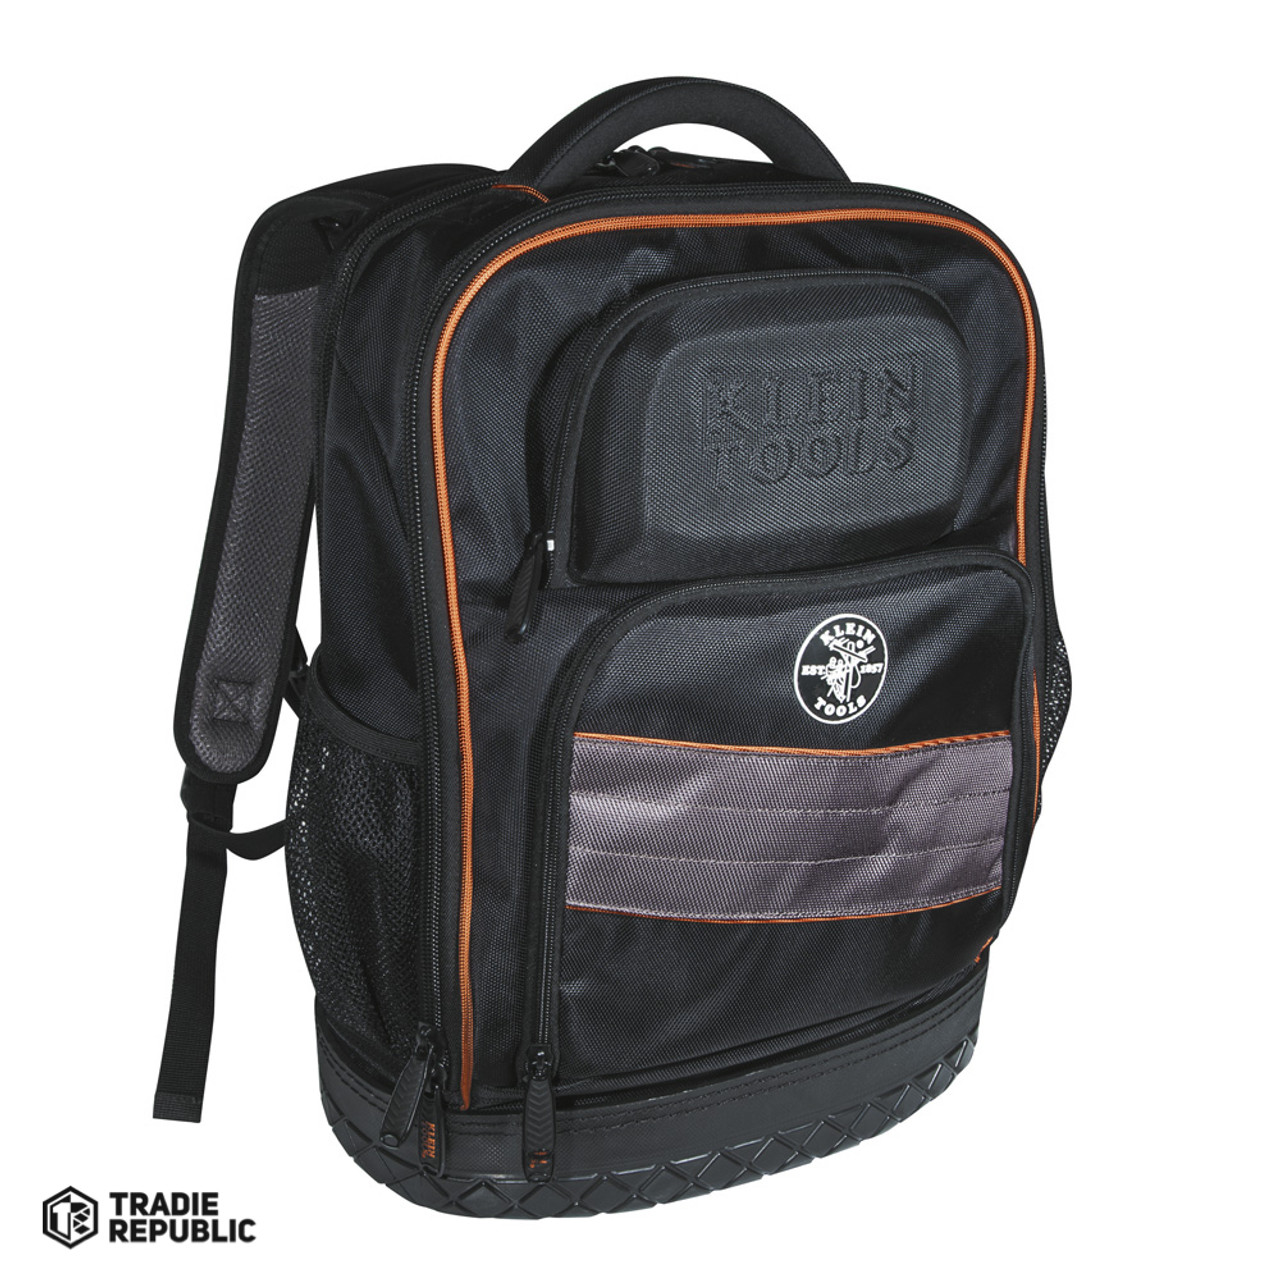 A-55456BPL Klein Backpack Laptop Pocket